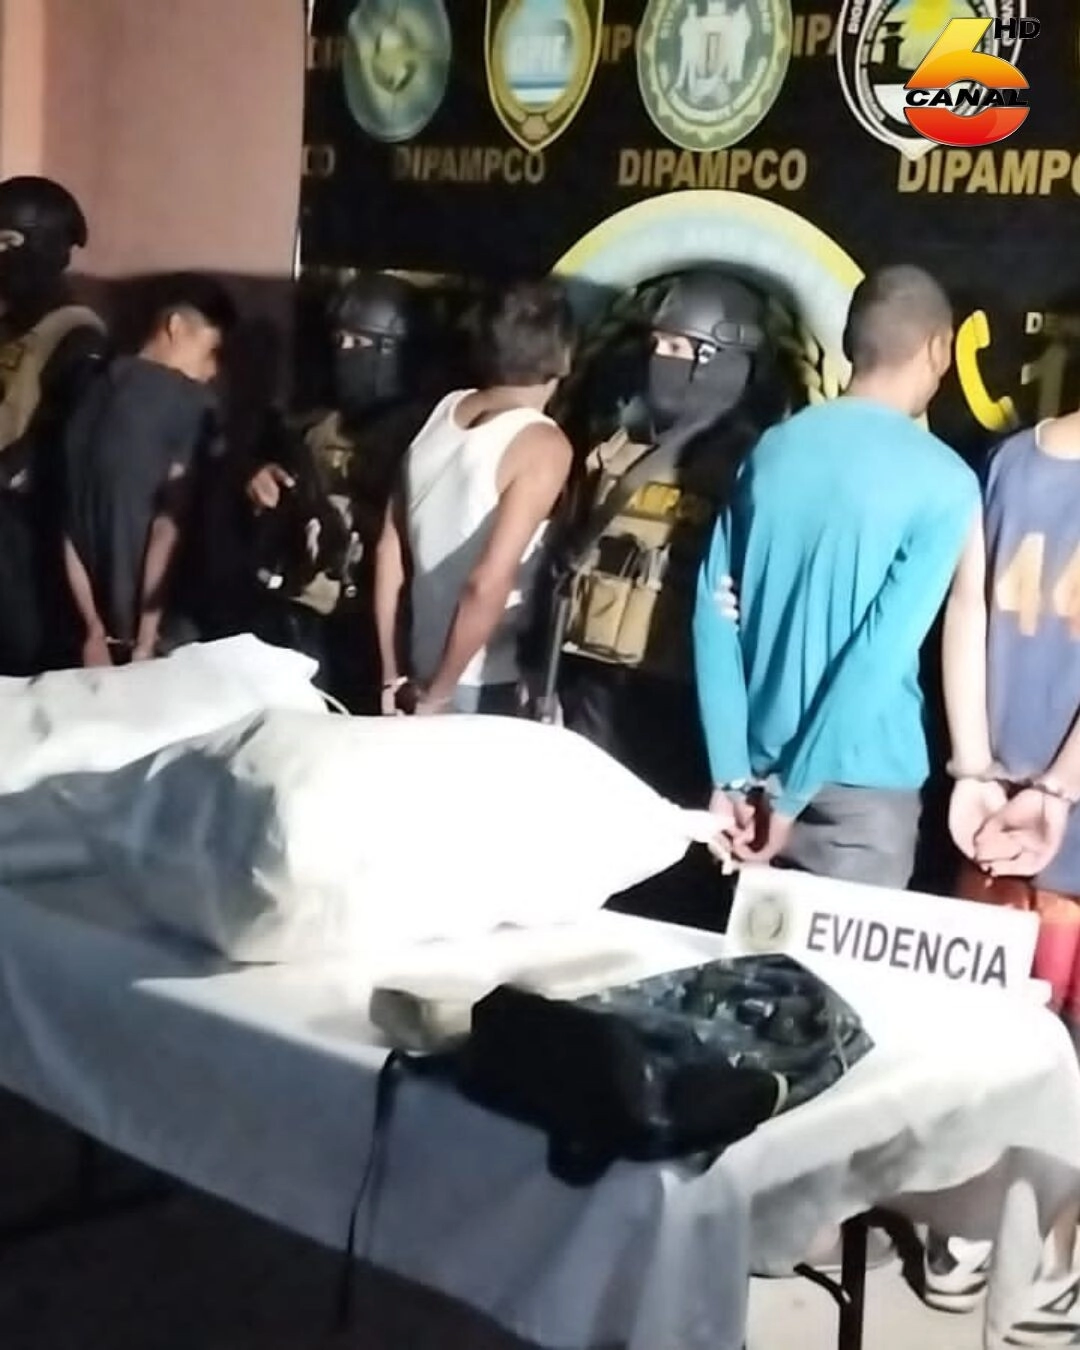 DIPAMPCO captura en Cantarranas Francisco Morazan a cuatro miembros de una familia vinculados al tráfico y distribución de drogas